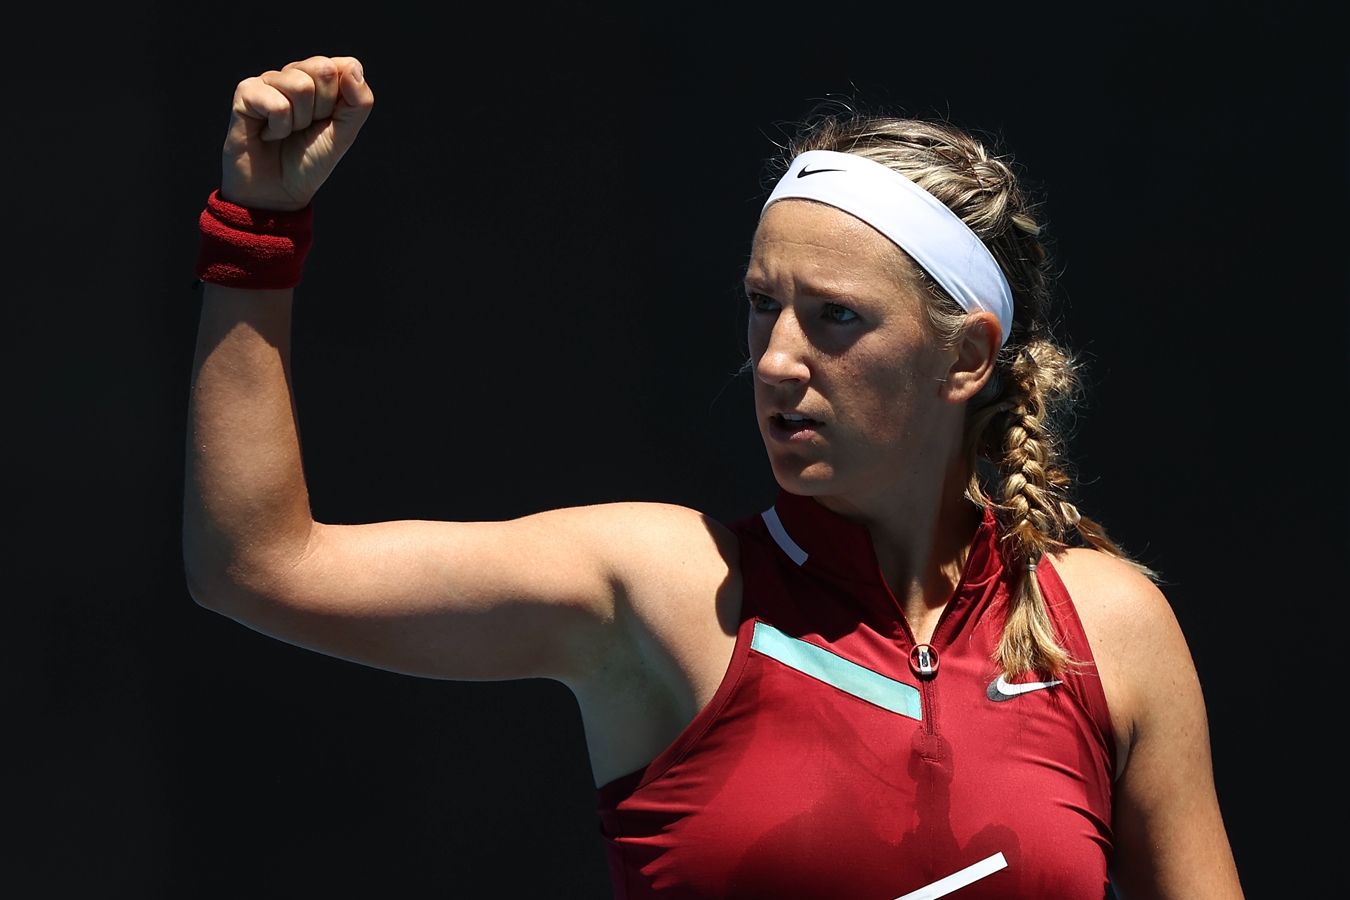 Виктория Азаренко вышла в четвертьфинал турнира в Риме, уверенно обыграв Саккари